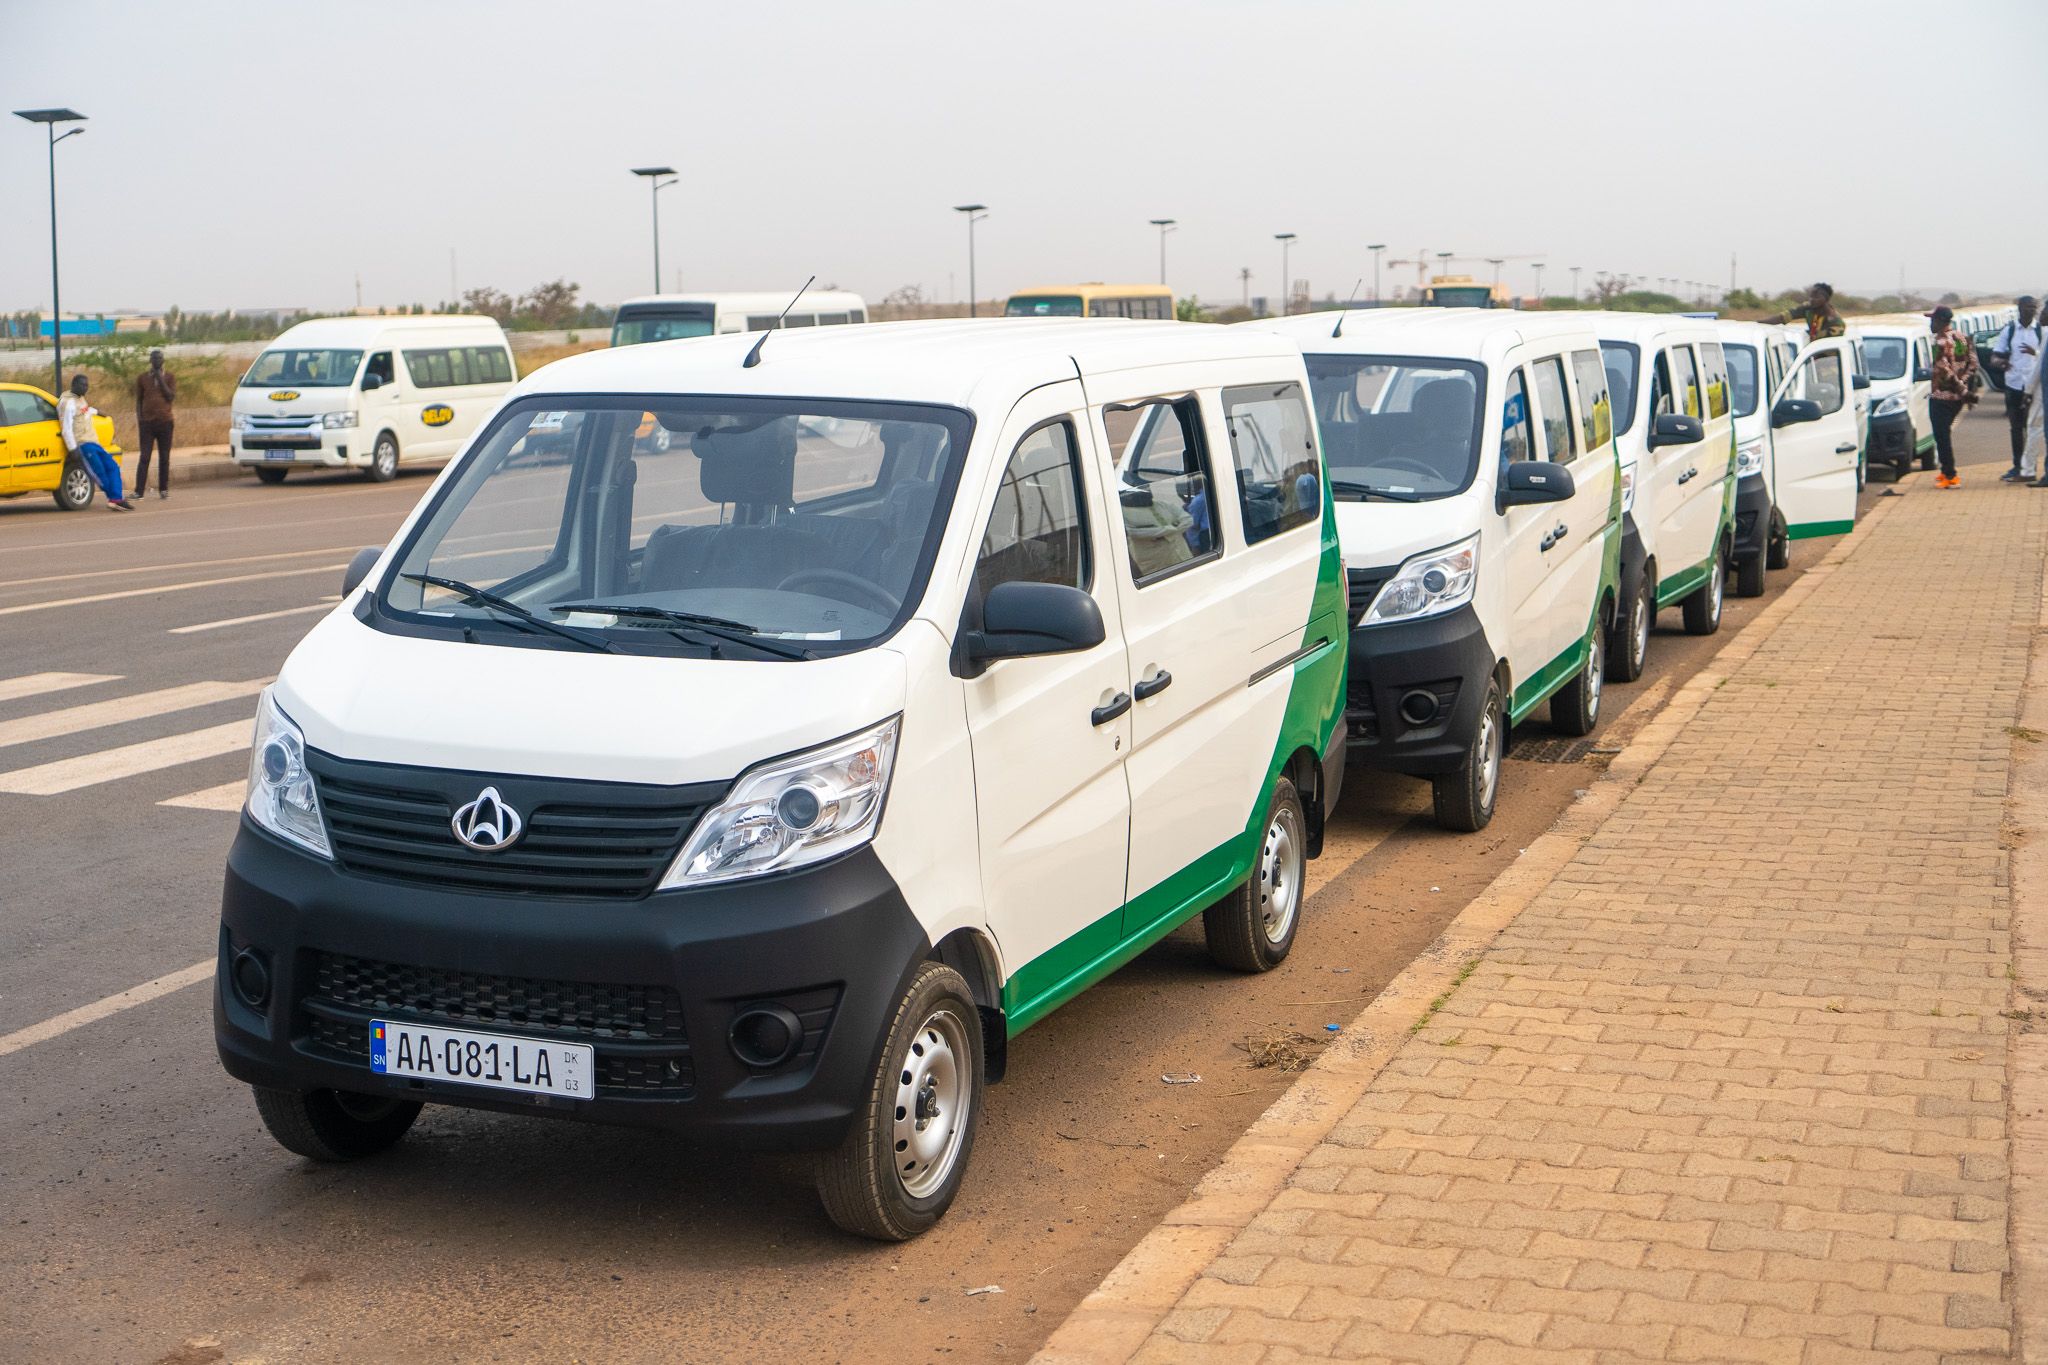 Sénégal : Cérémonie de remise de clés d’un lot de 300 taxis collectifs pour le transport urbain de proximité par le conseil exécutif du transport urbain durable (CETUD)